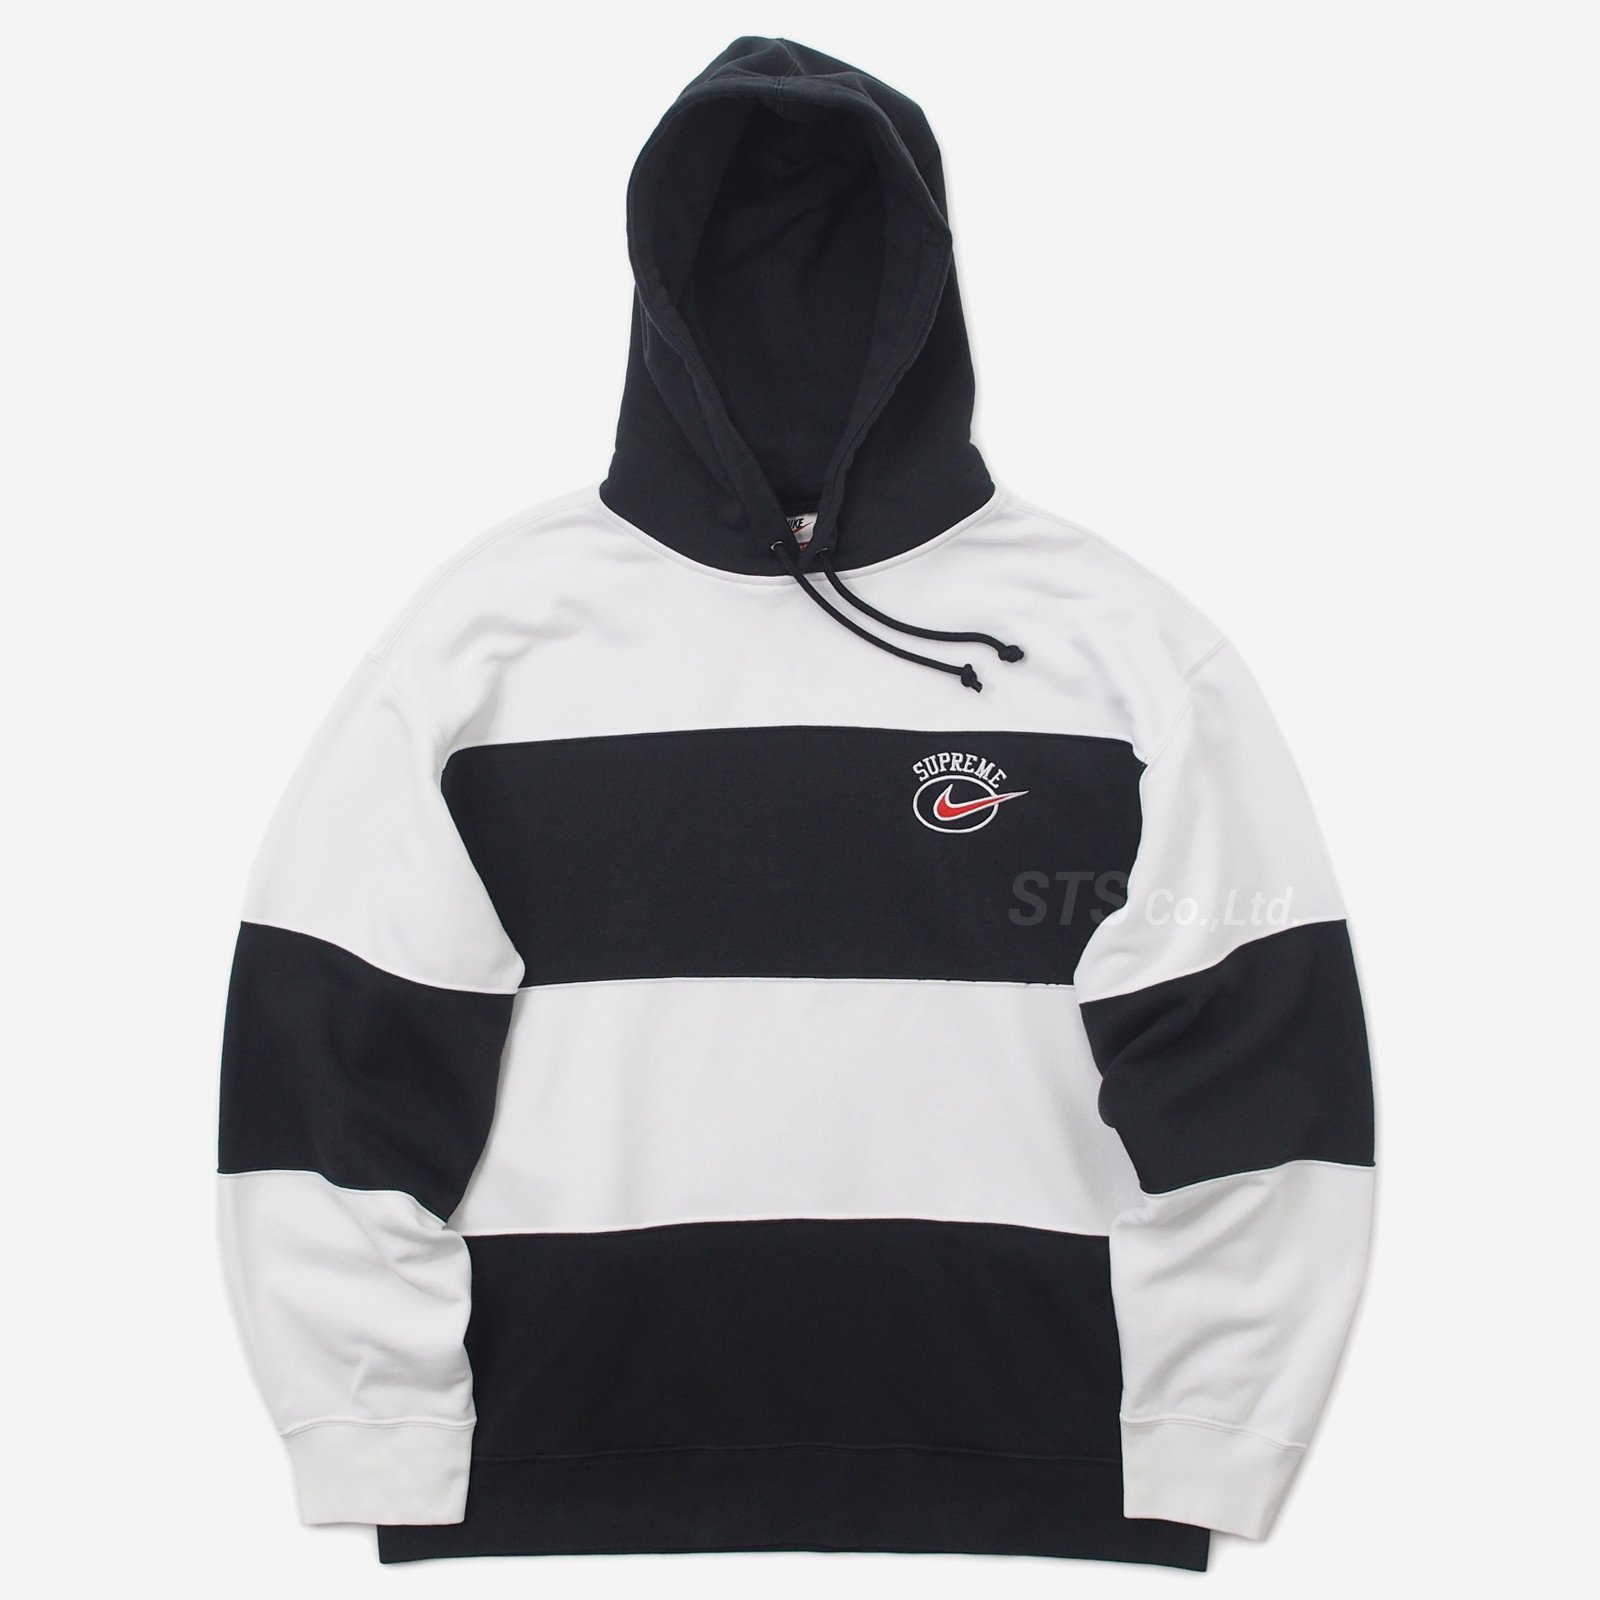 Supreme®/Nike® Hooded Sweatshirt